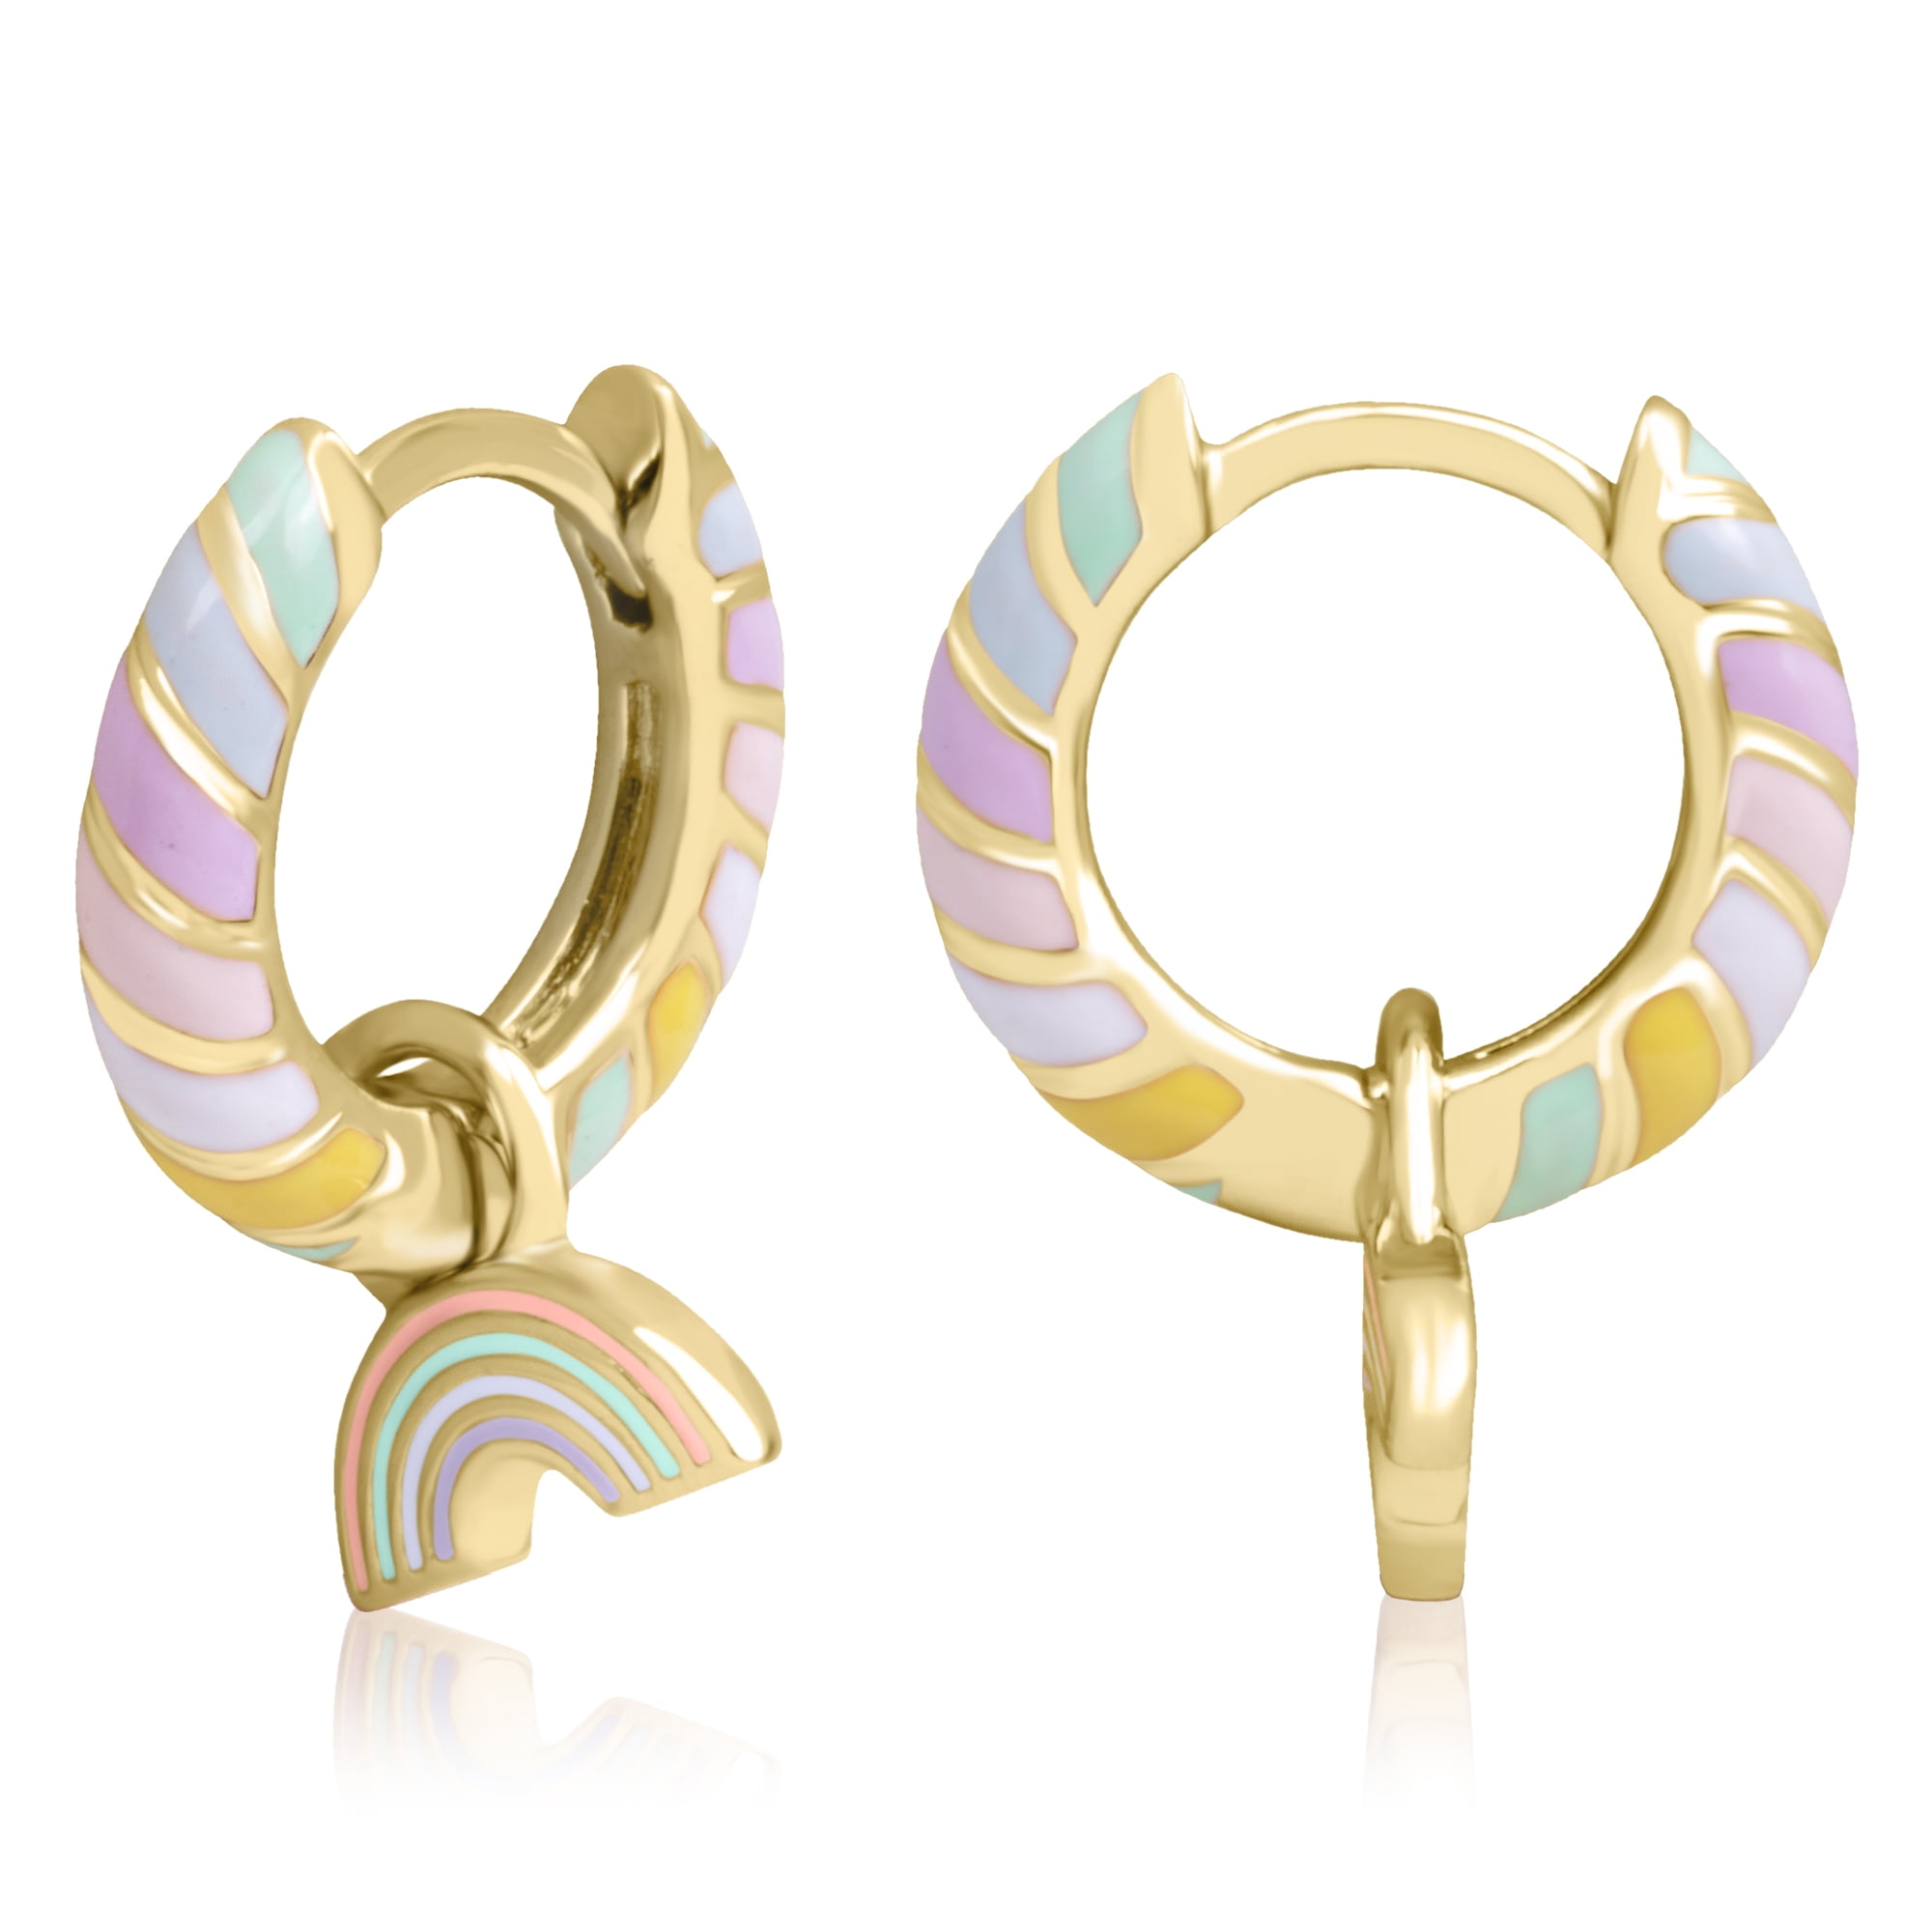 Colorful Enamel Design Enamel Hoop Earrings Vintage Elegant Style Personality Ear Ornaments Trendy Gifts for Women Girls,White,Zinc Alloy,$1.49